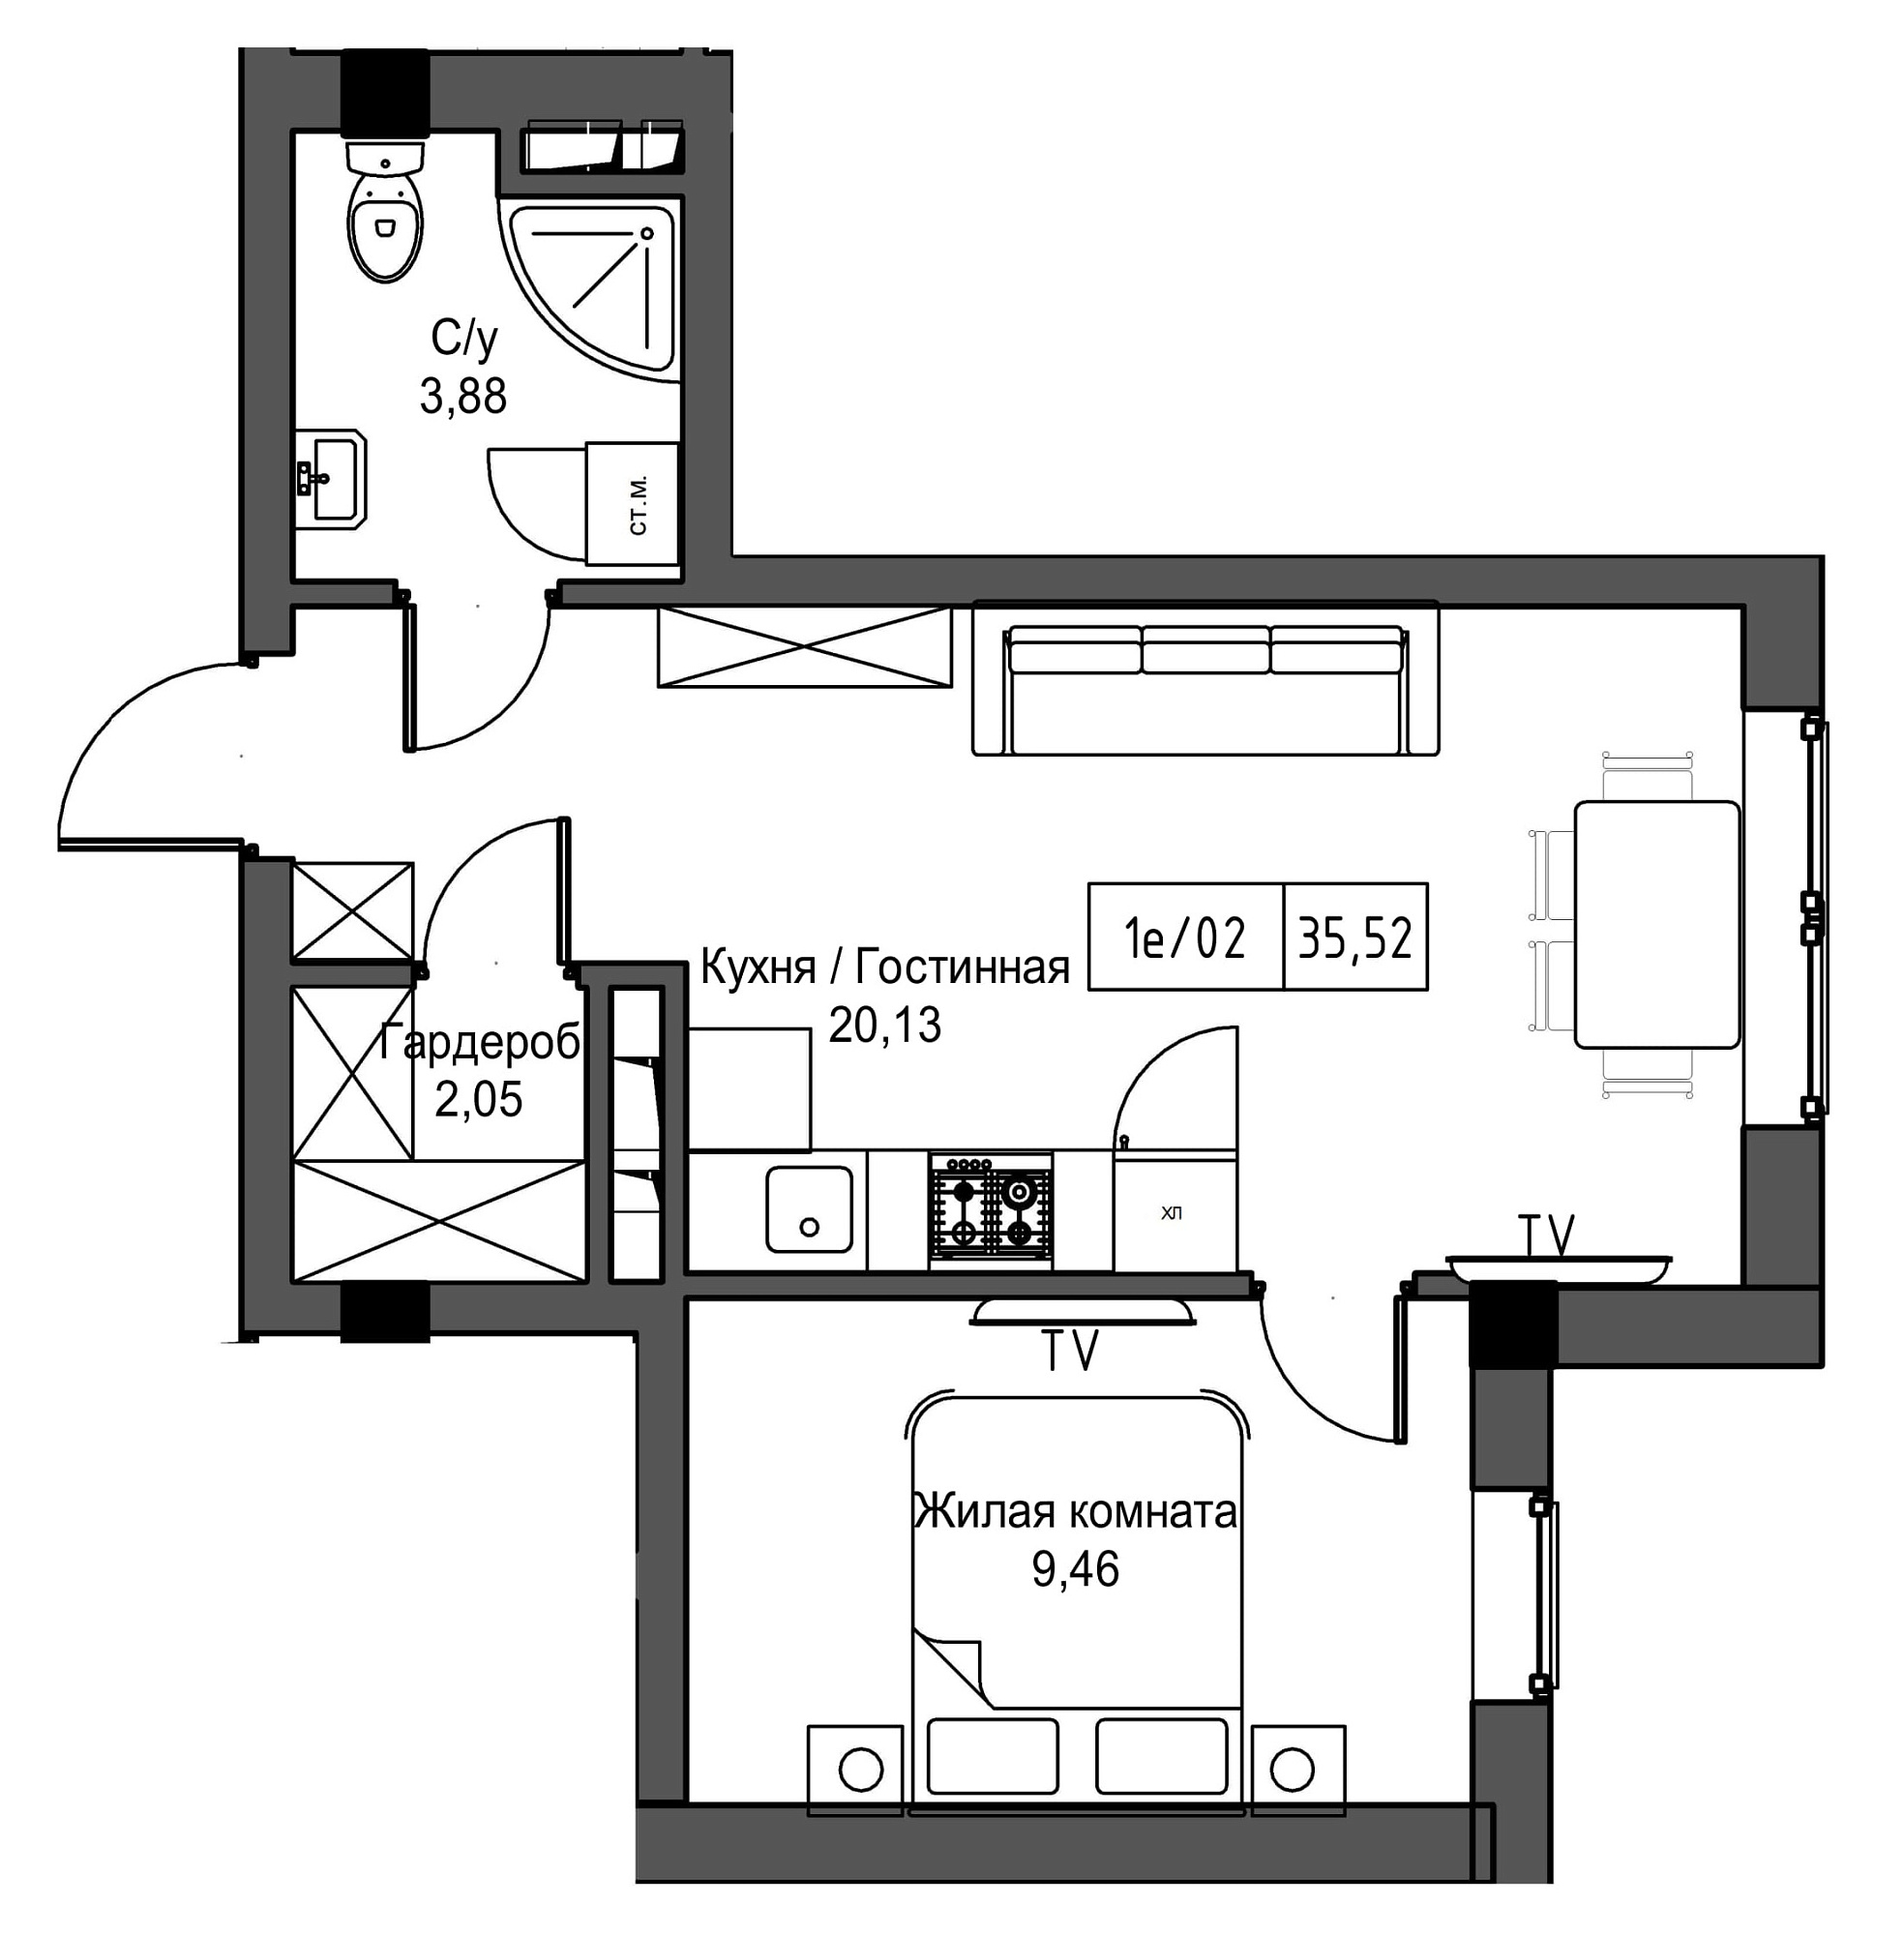 Планировка 1-к квартира площей 35.52м2, UM-002-09/0083.